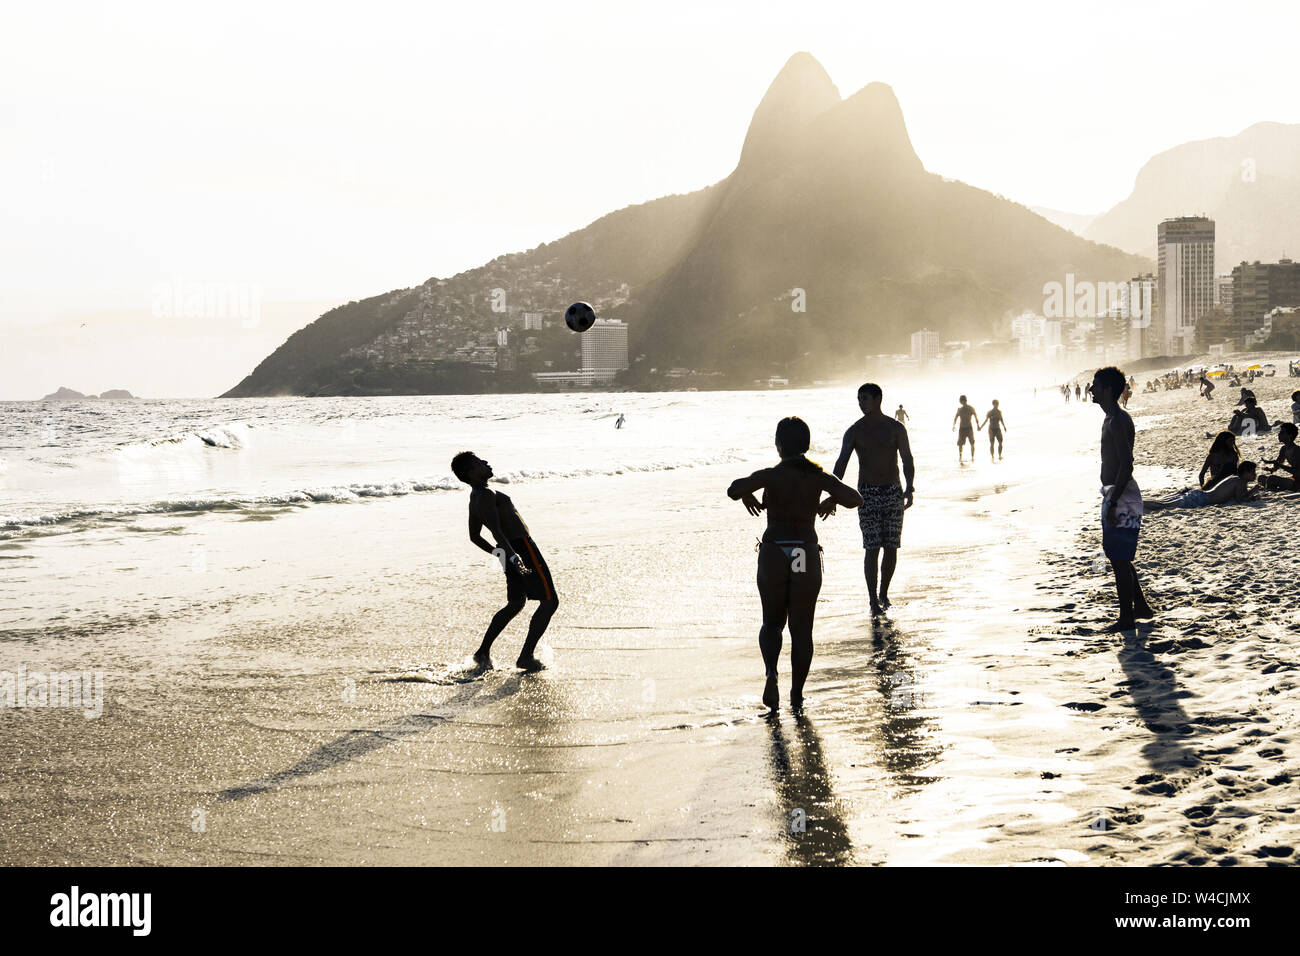 RIO DE JANEIRO, Brésil - 24 février 2015 : un groupe de Brésiliens jouant sur le rivage de la plage d'Ipanema, avec la célèbre montagne Dois Irmãos derrière eux Banque D'Images